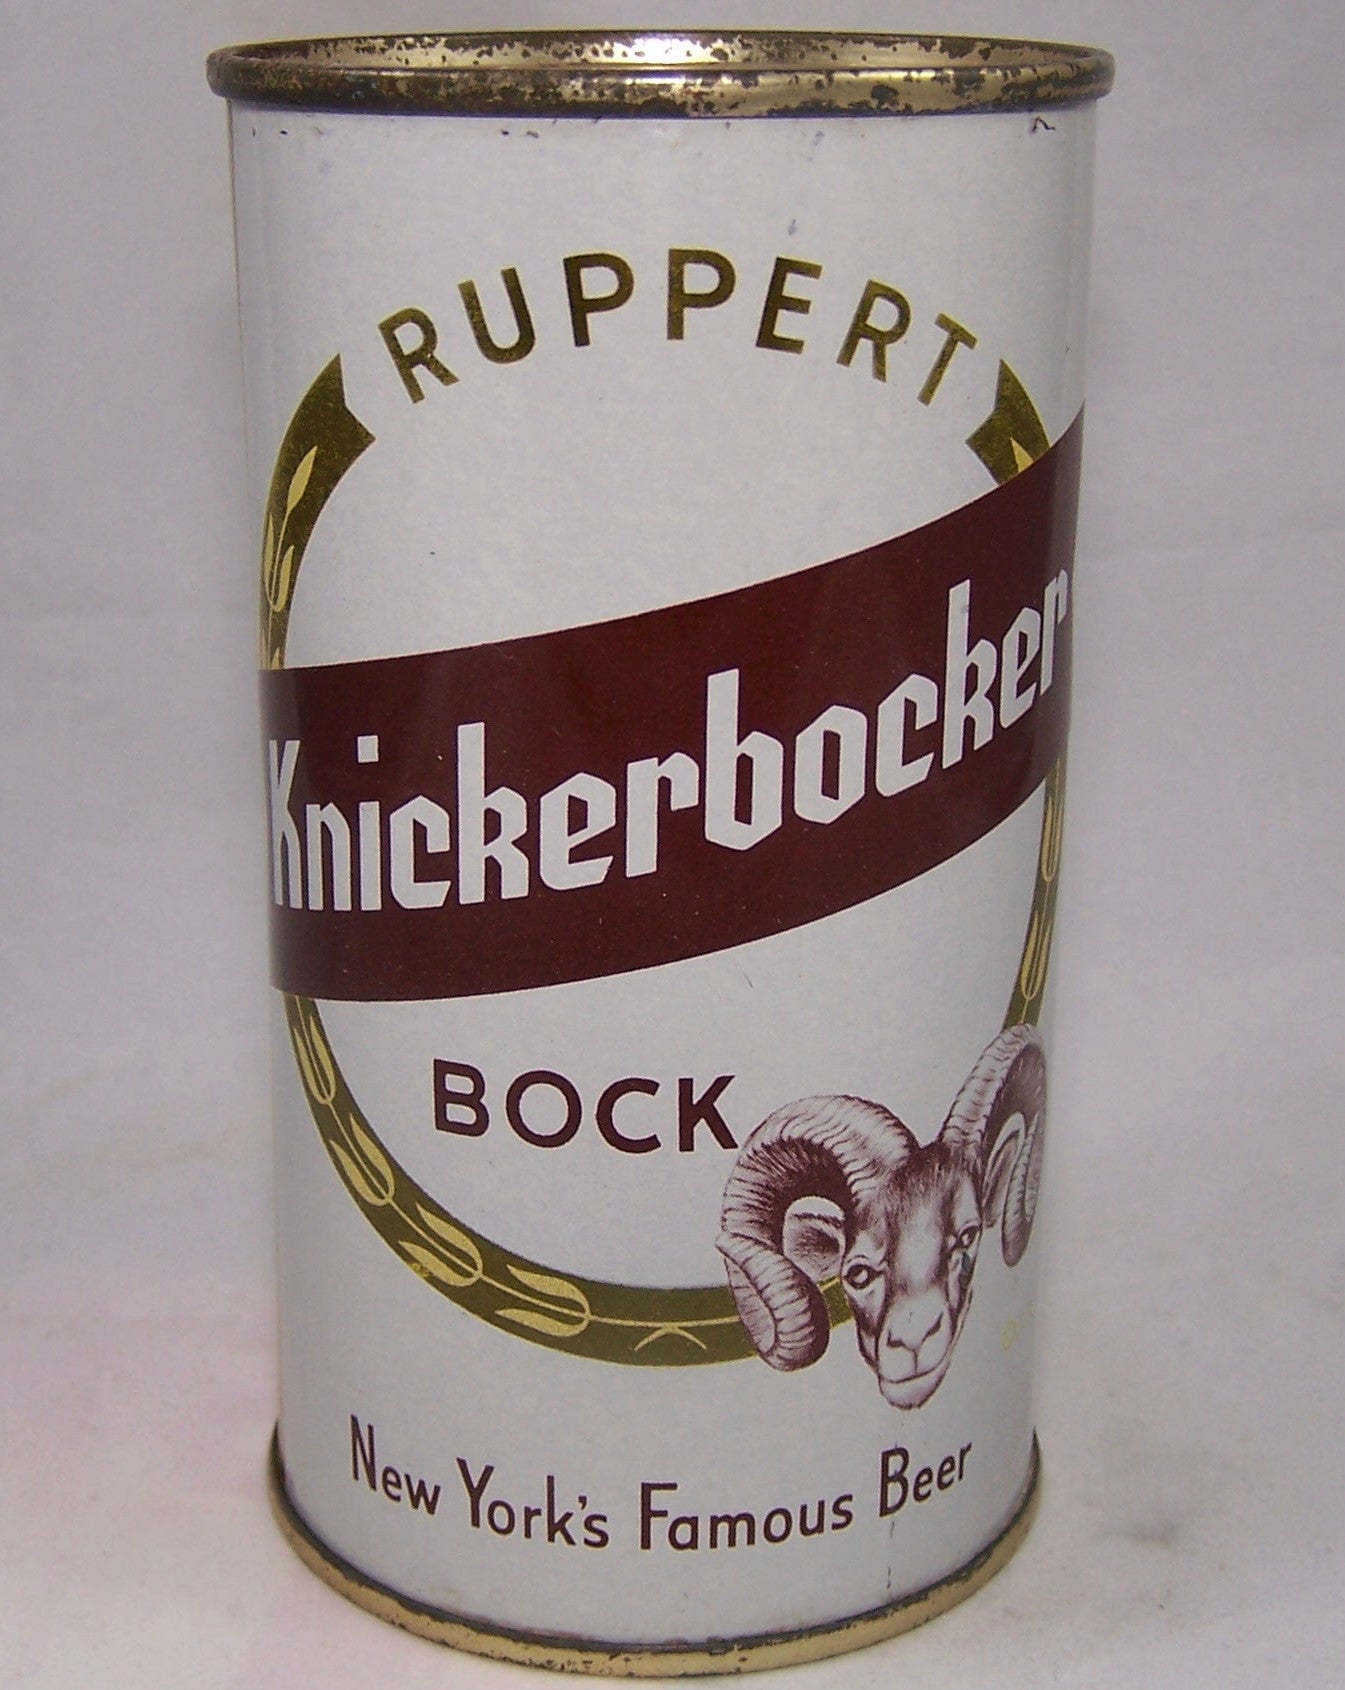 Ruppert Knickerbocker Bock, USBC 126-32, Grade 1 to 1/1+ Sold on 10/03/17